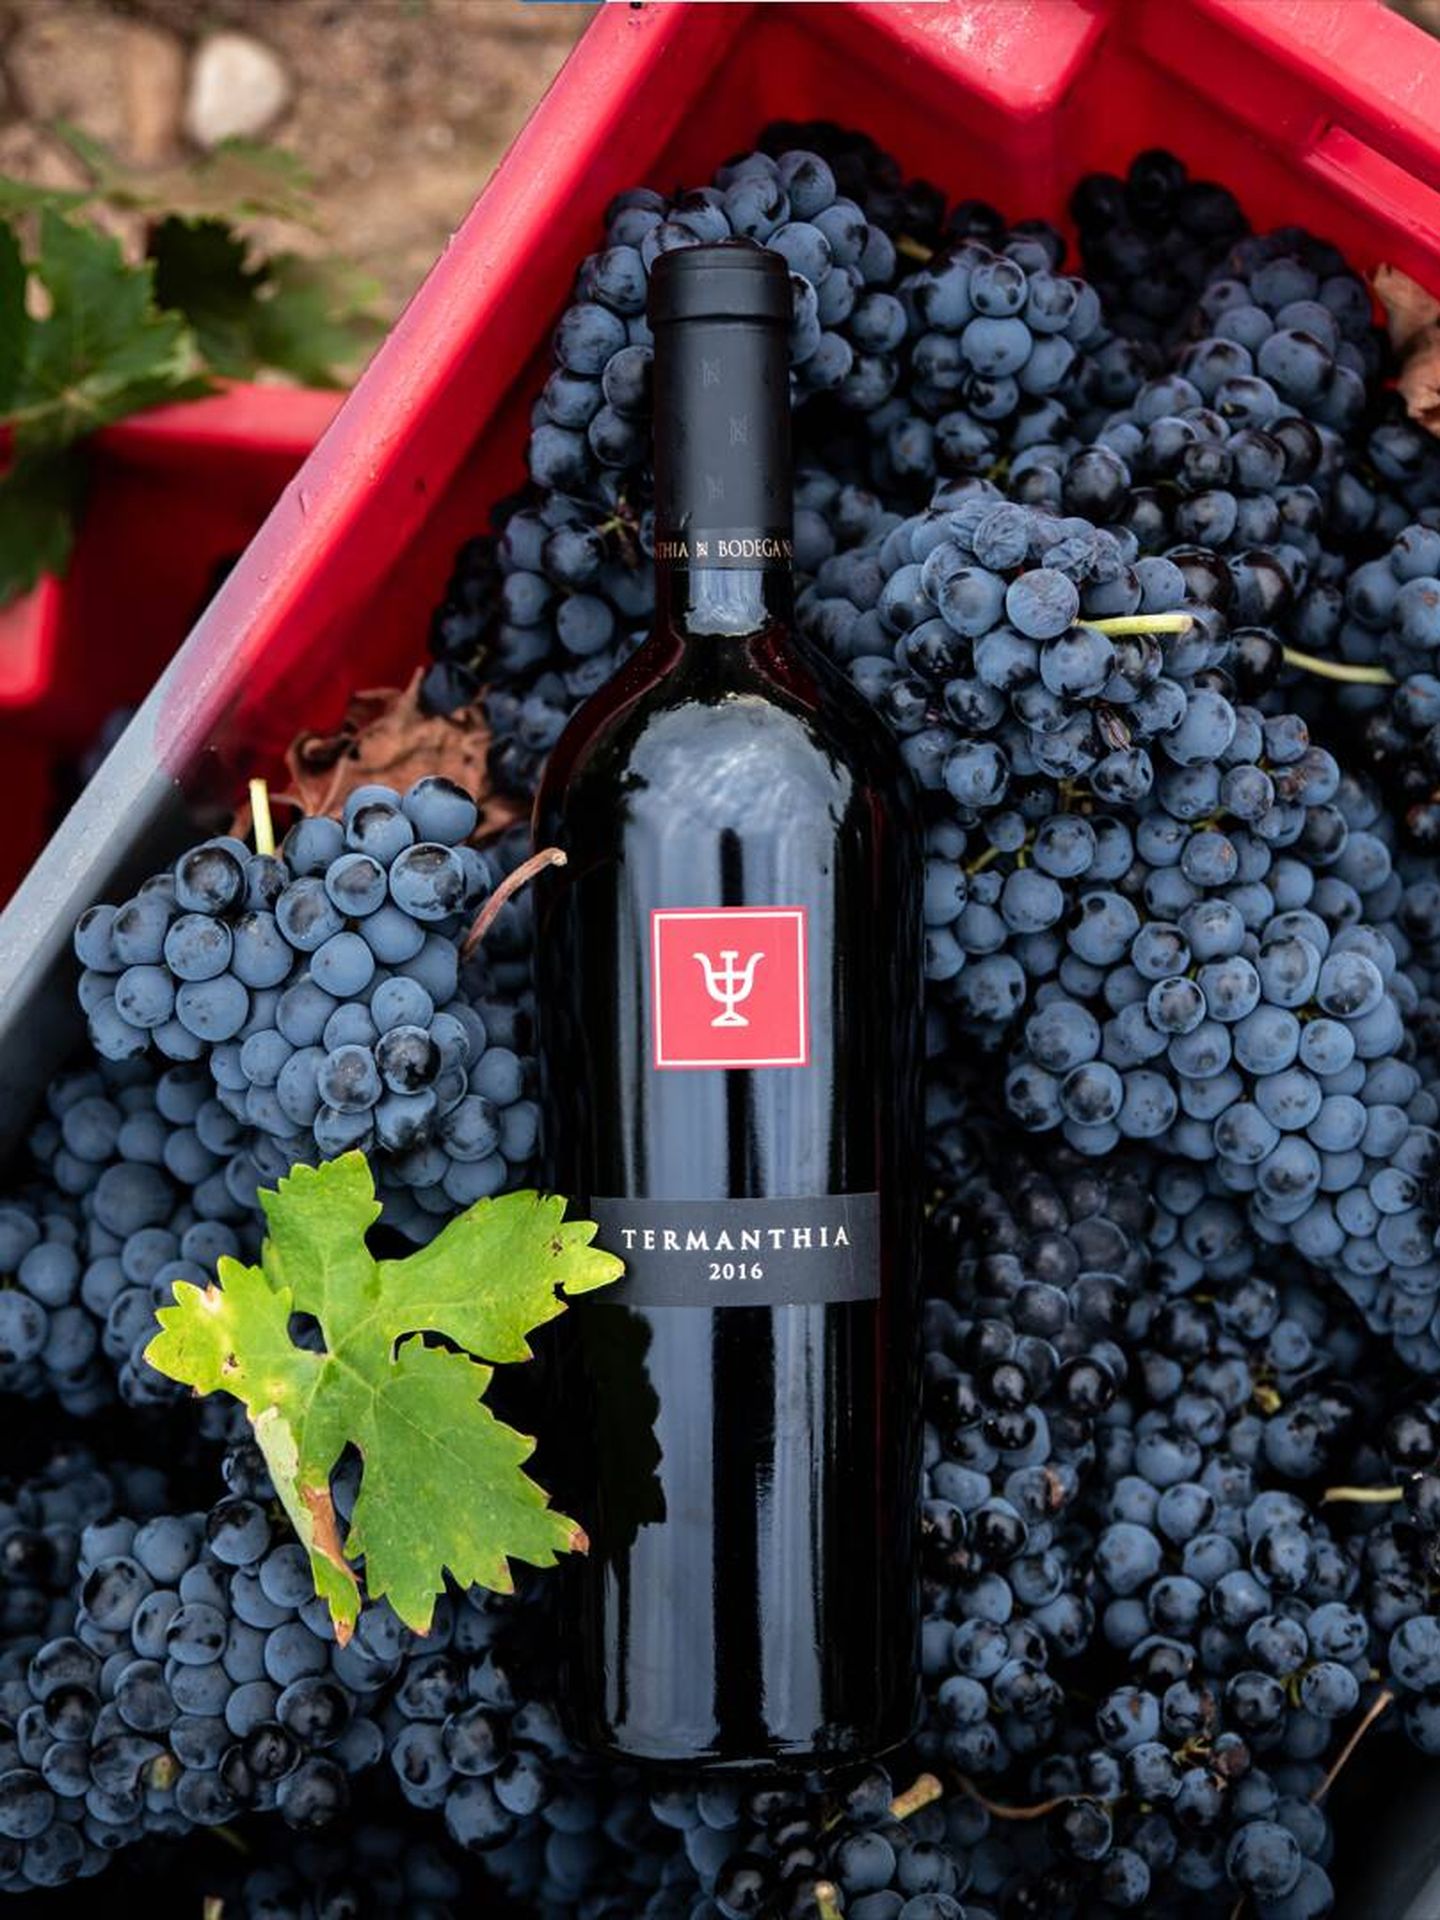 Termanthia 2016 —recién presentado— es un vino elegante, equilibrado, con un perfil fresco, largo y fino; buena acidez y mucha complejidad. Esta añada 2016 se consolida como una de las joyas del vino español. (Cortesía)
